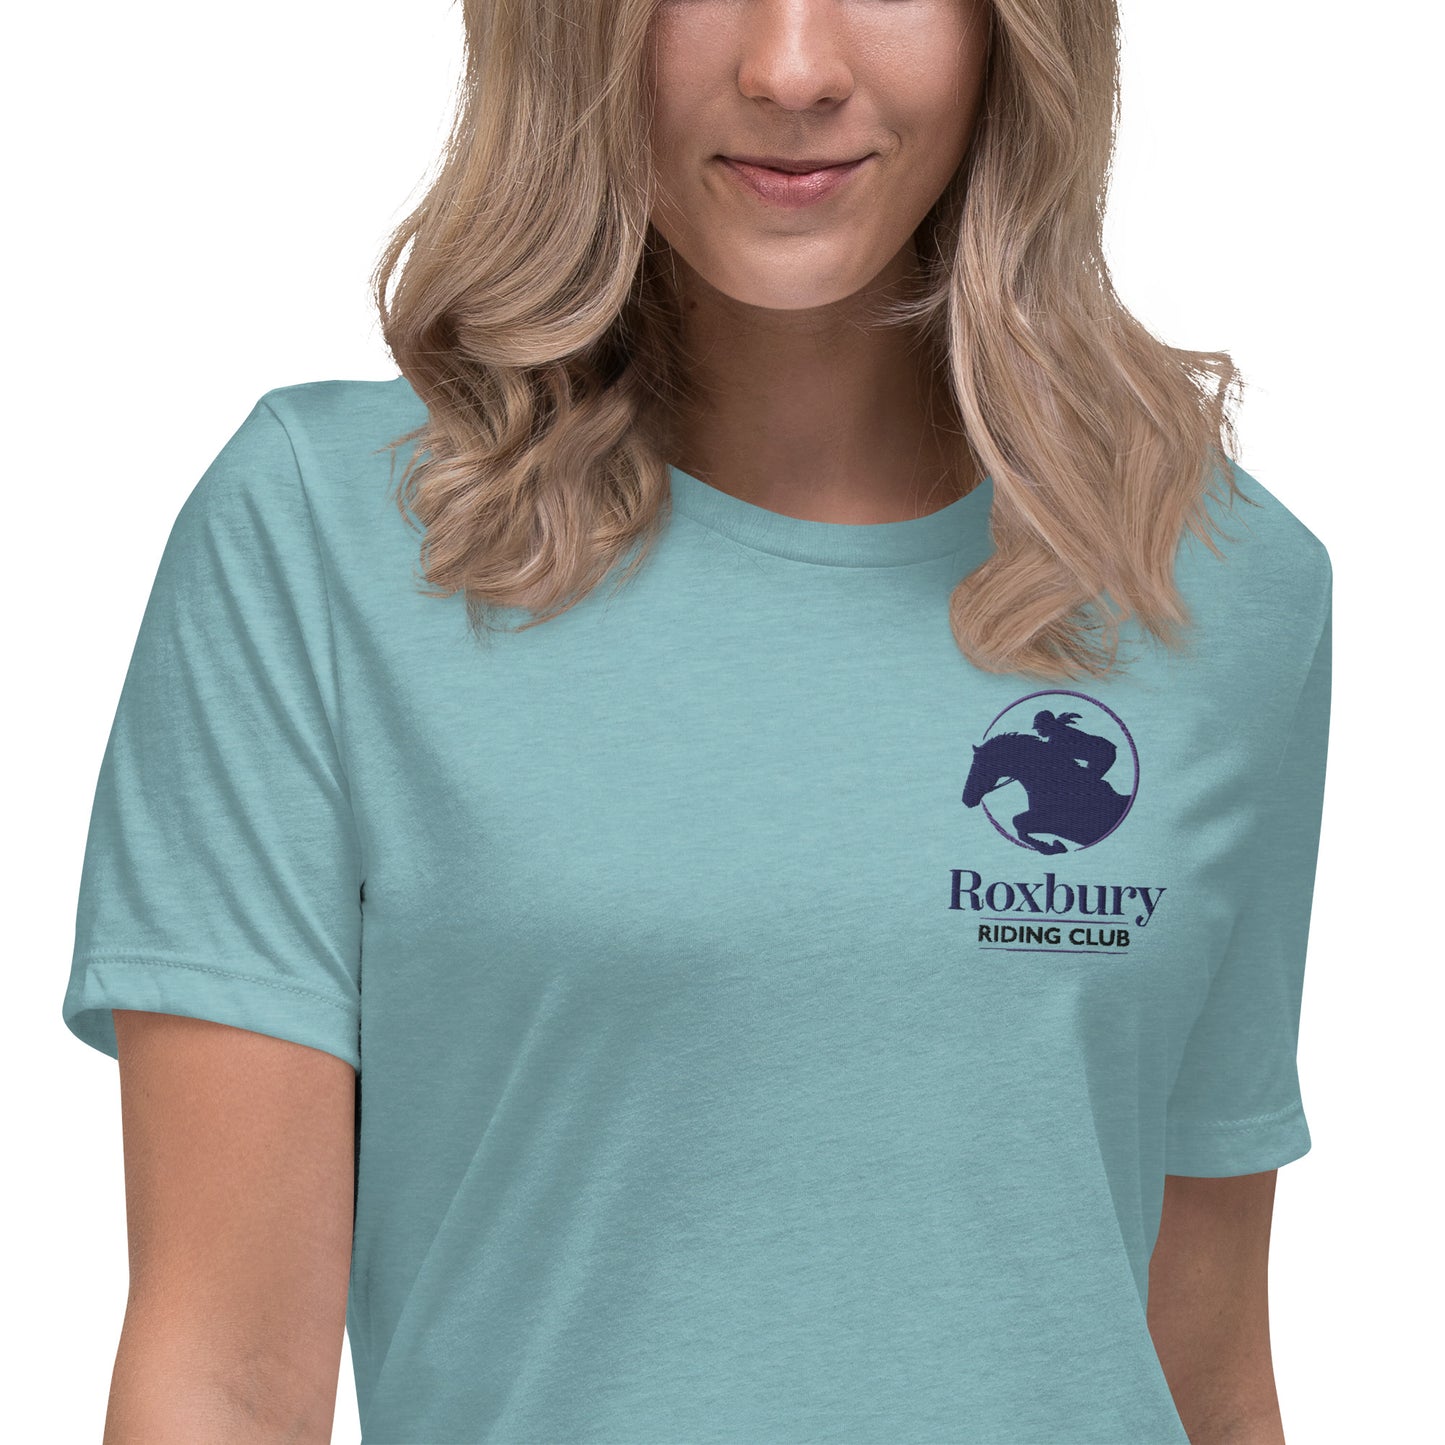 Roxbury Riding Club Teal T-Shirt